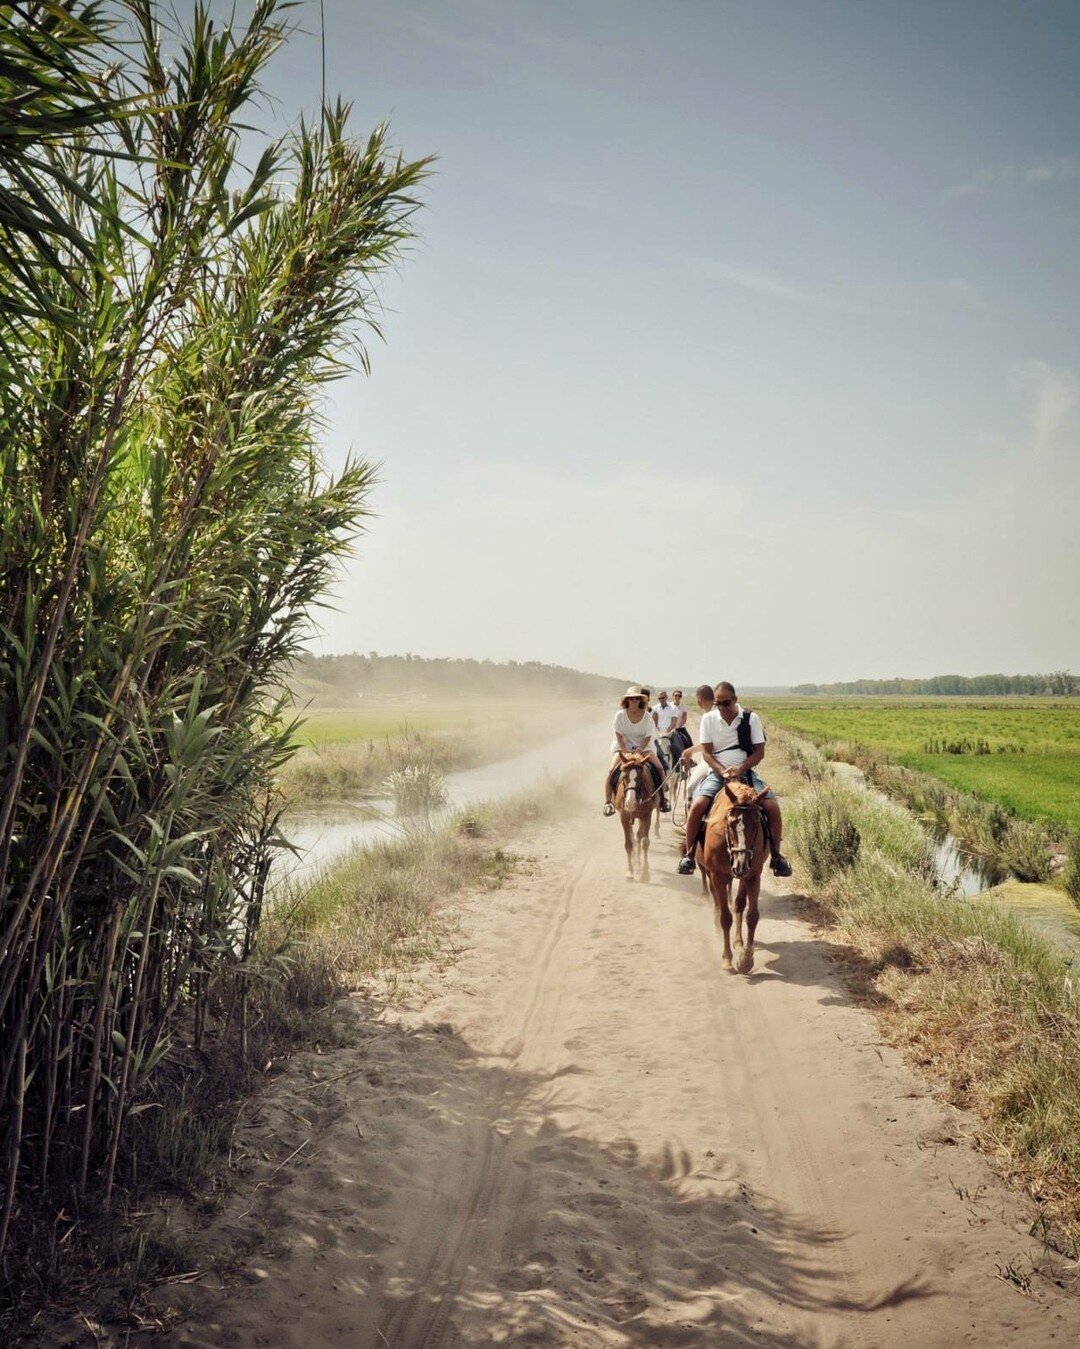 Pouvez-vous imaginer une meilleure façon de découvrir les sentiers secrets cachés parmi les rizières qu'à cheval ? Trouvez la paix véritable en parfaite harmonie avec la nature en compagnie des plus beaux chevaux de @cavalosnaareia. 
.
.
Consegue imaginar